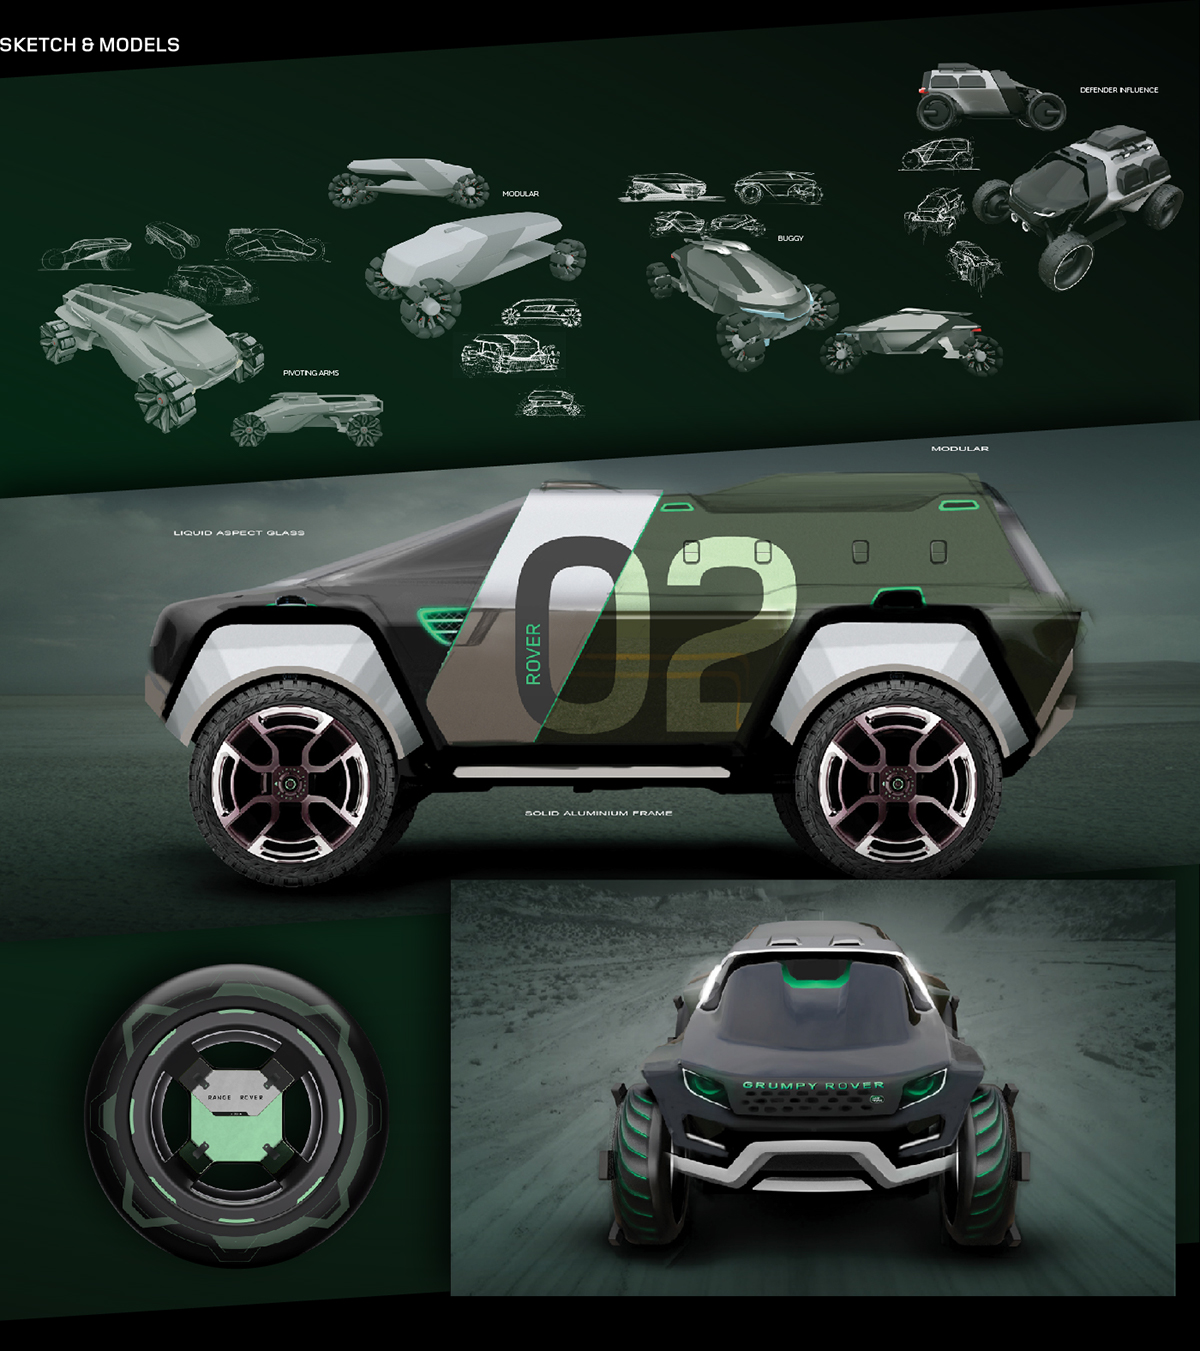 jaguar Land Rover design car alien concept offender defender